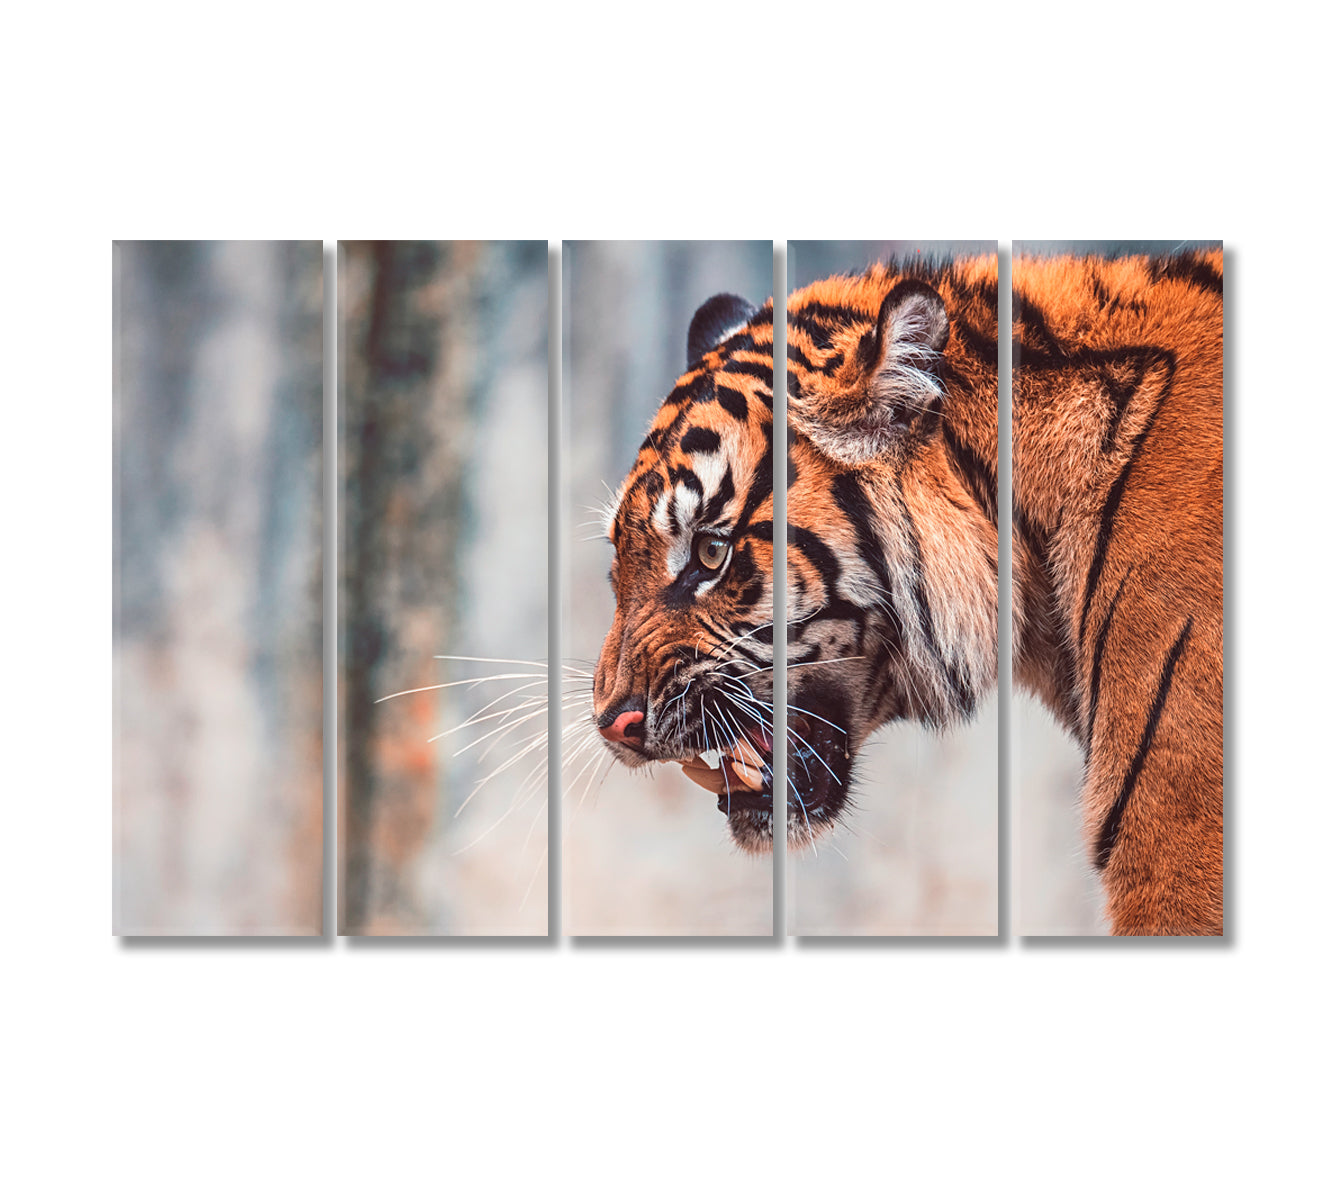 Angry Sumatran Tiger Canvas Print-Canvas Print-CetArt-5 Panels-36x24 inches-CetArt